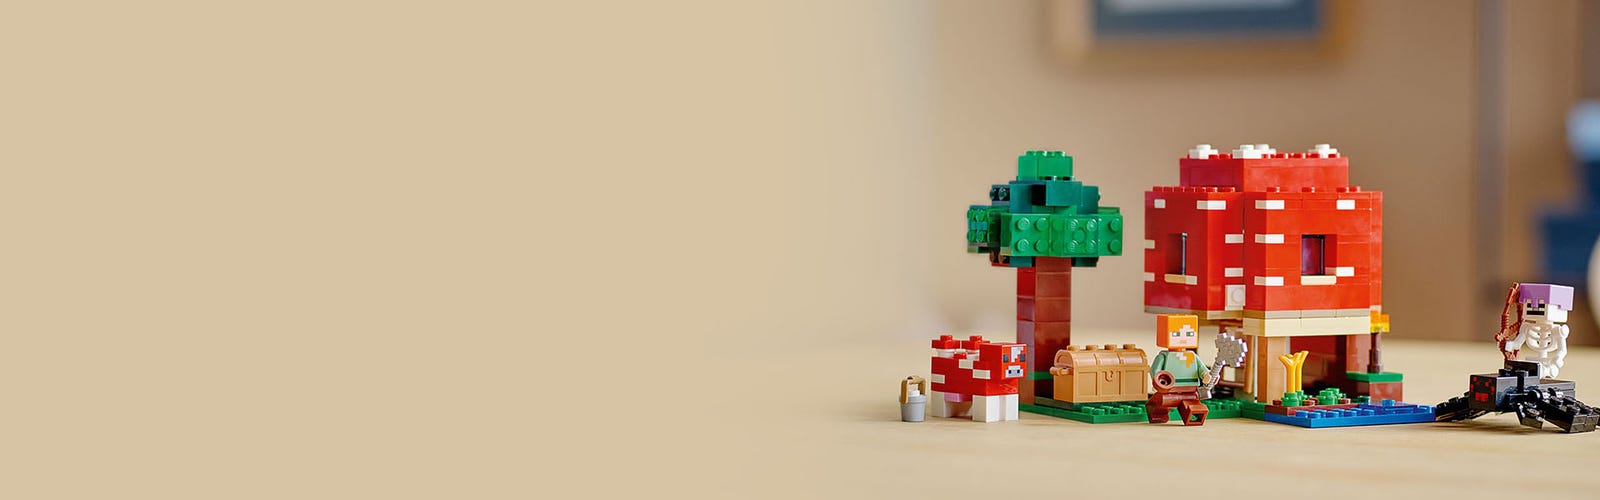 Lego 21179 minecraft la maison champignon set jouet de